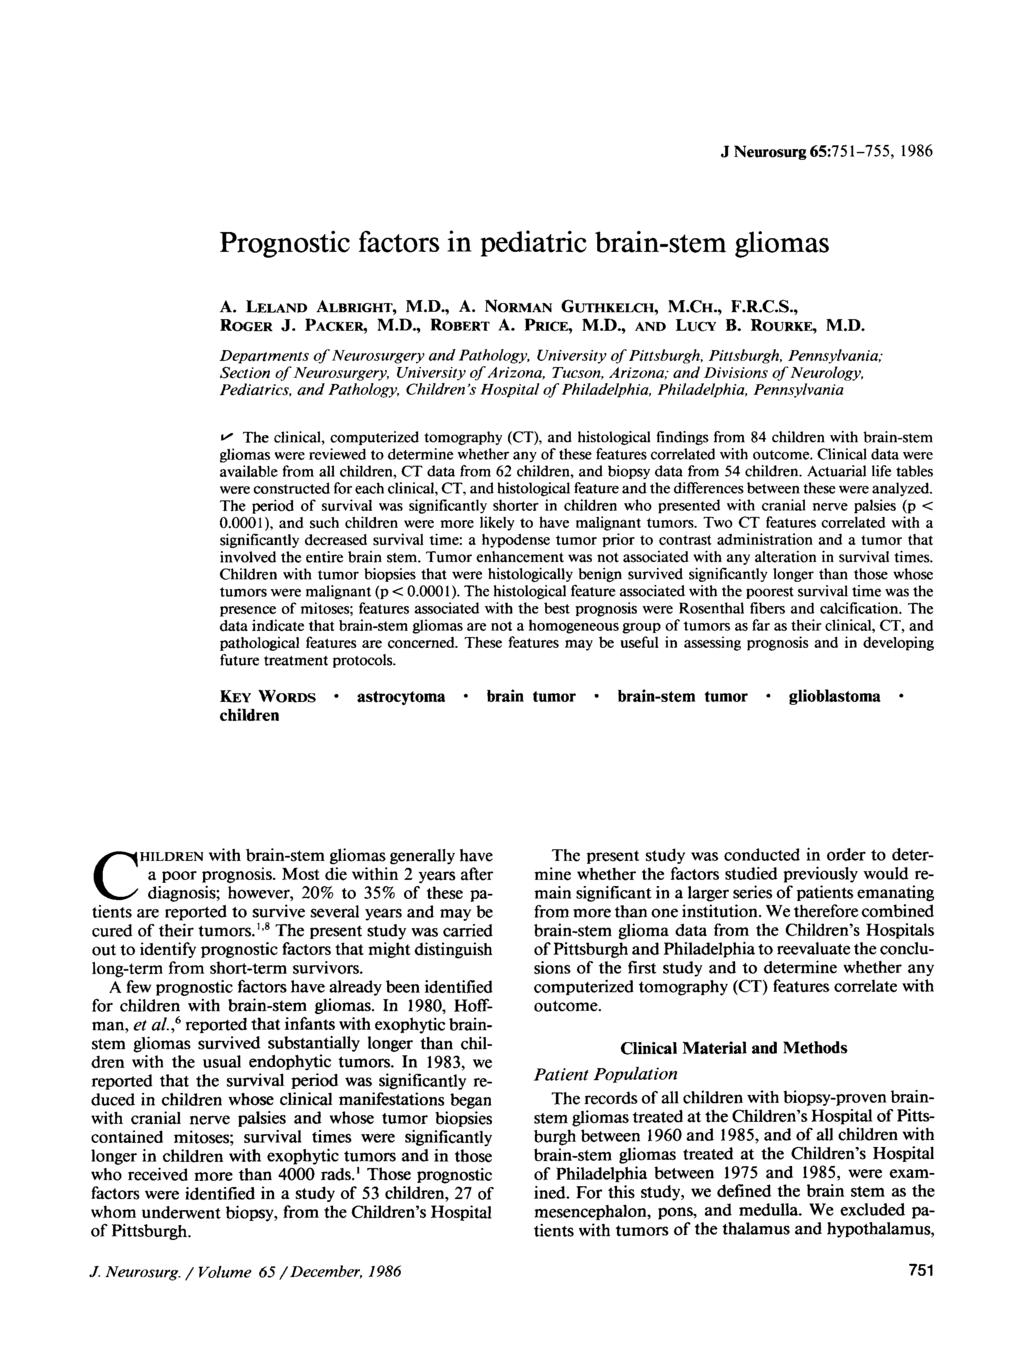 J Neurosurg 65:751-755, 1986 Prognostic factors in pediatric brain-stem gliomas A. LLAND ALBRIGHT, M.D., A. NRMAN GUTHKLCH, M.CH., F.R.C.S., RGR J. PACKR, M.D., RBRT A. PRIC, M.D., AND LUCY B.